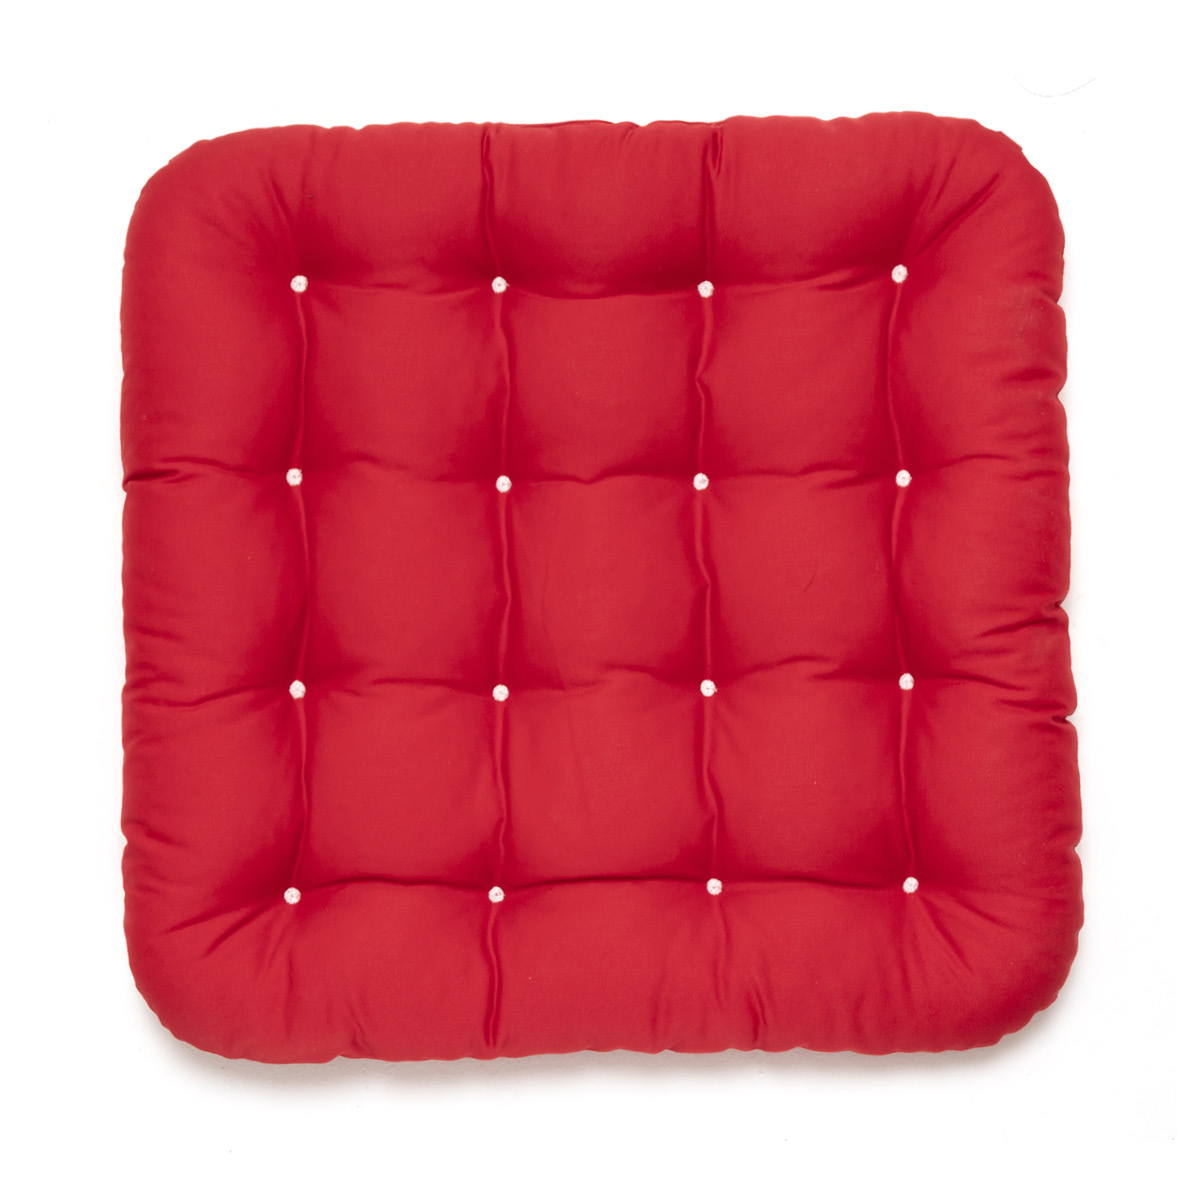 Hochwertiges Stuhlkissen 40x40 rot, Allergiker geeignet aus hautfreundlichem Baumwollstoff, gepolstert mit weissen Riegeln | HAVE A SEAT Living